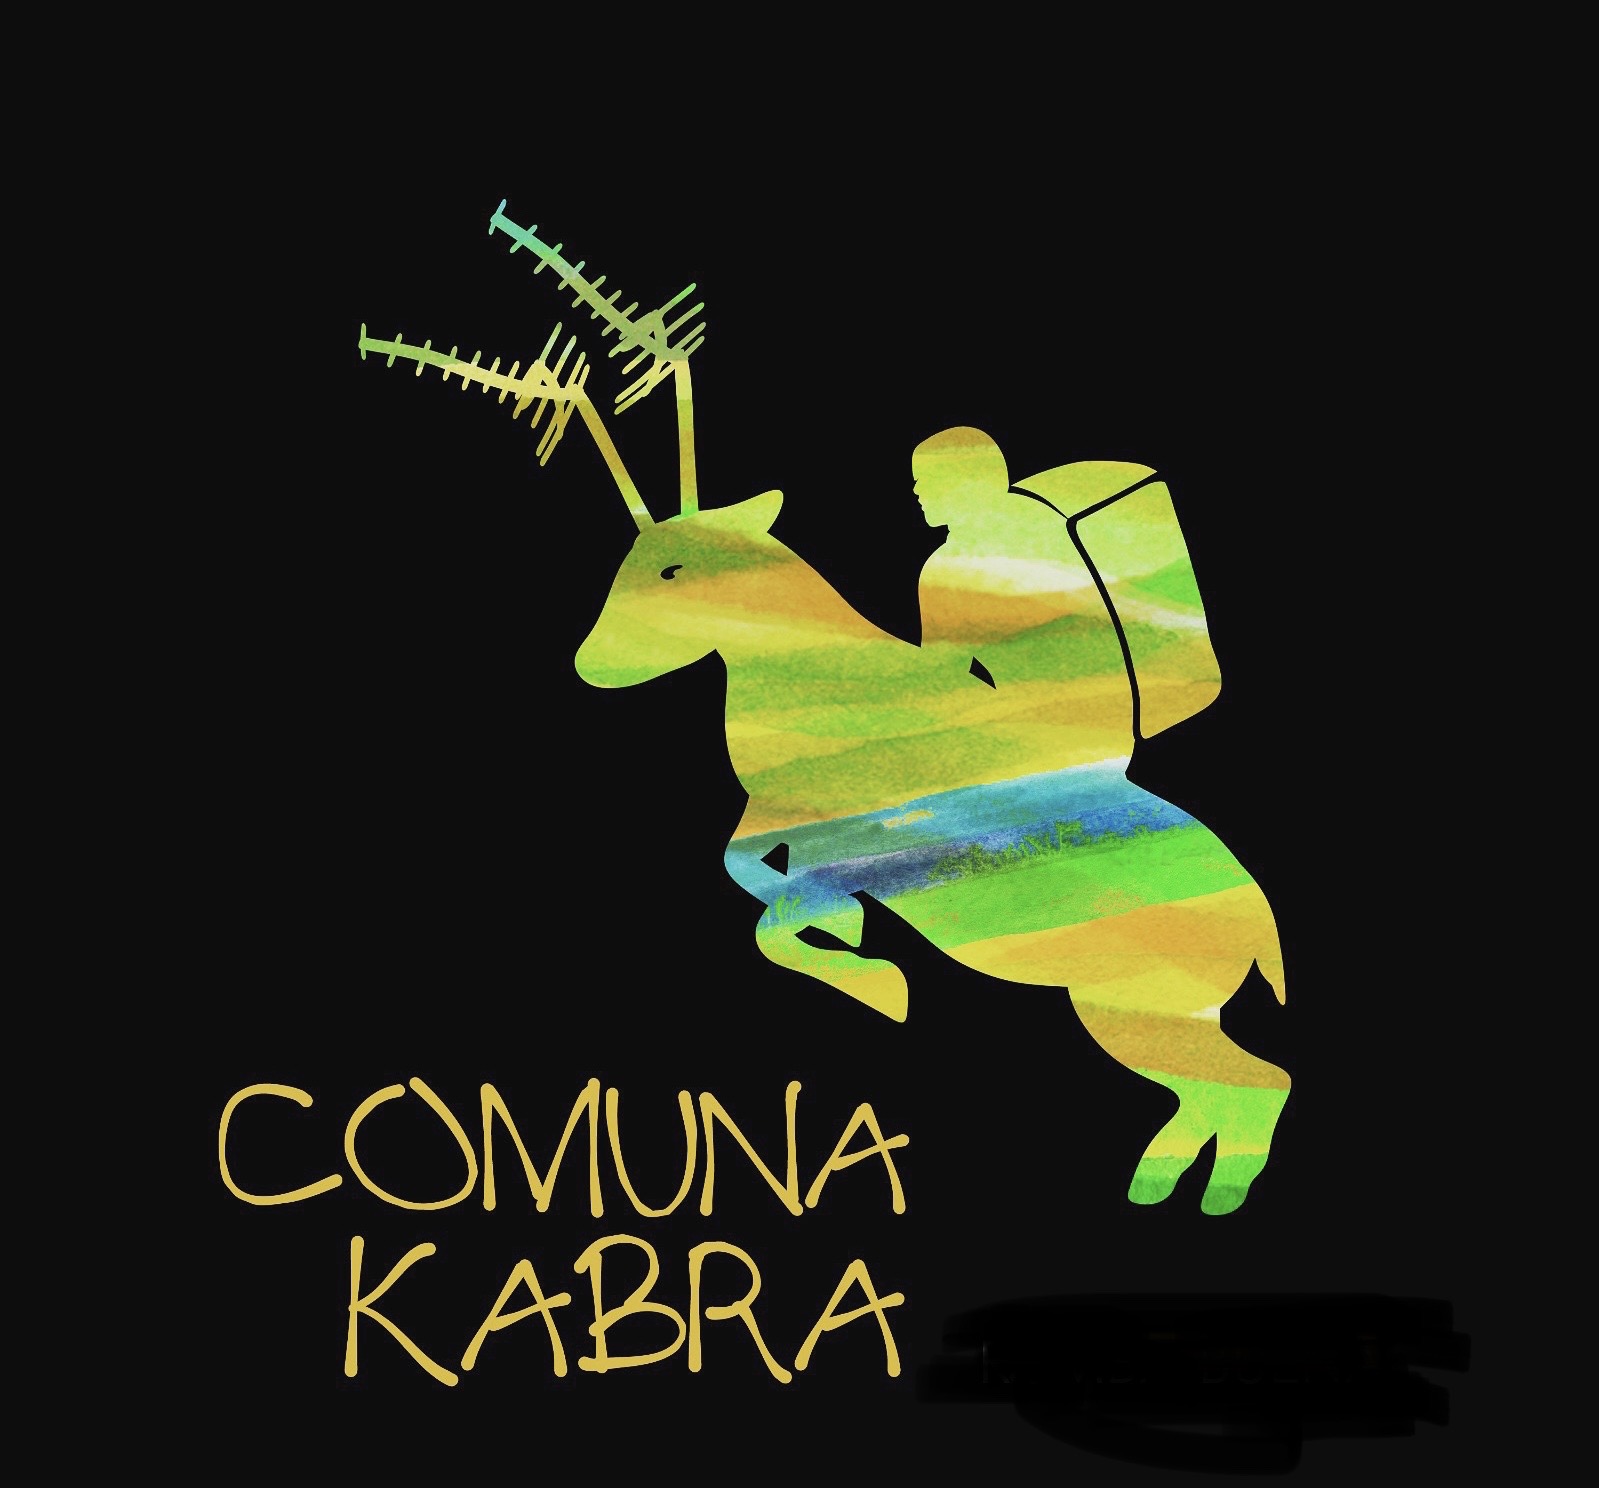 Comuna kabra presenta “son por bandera”